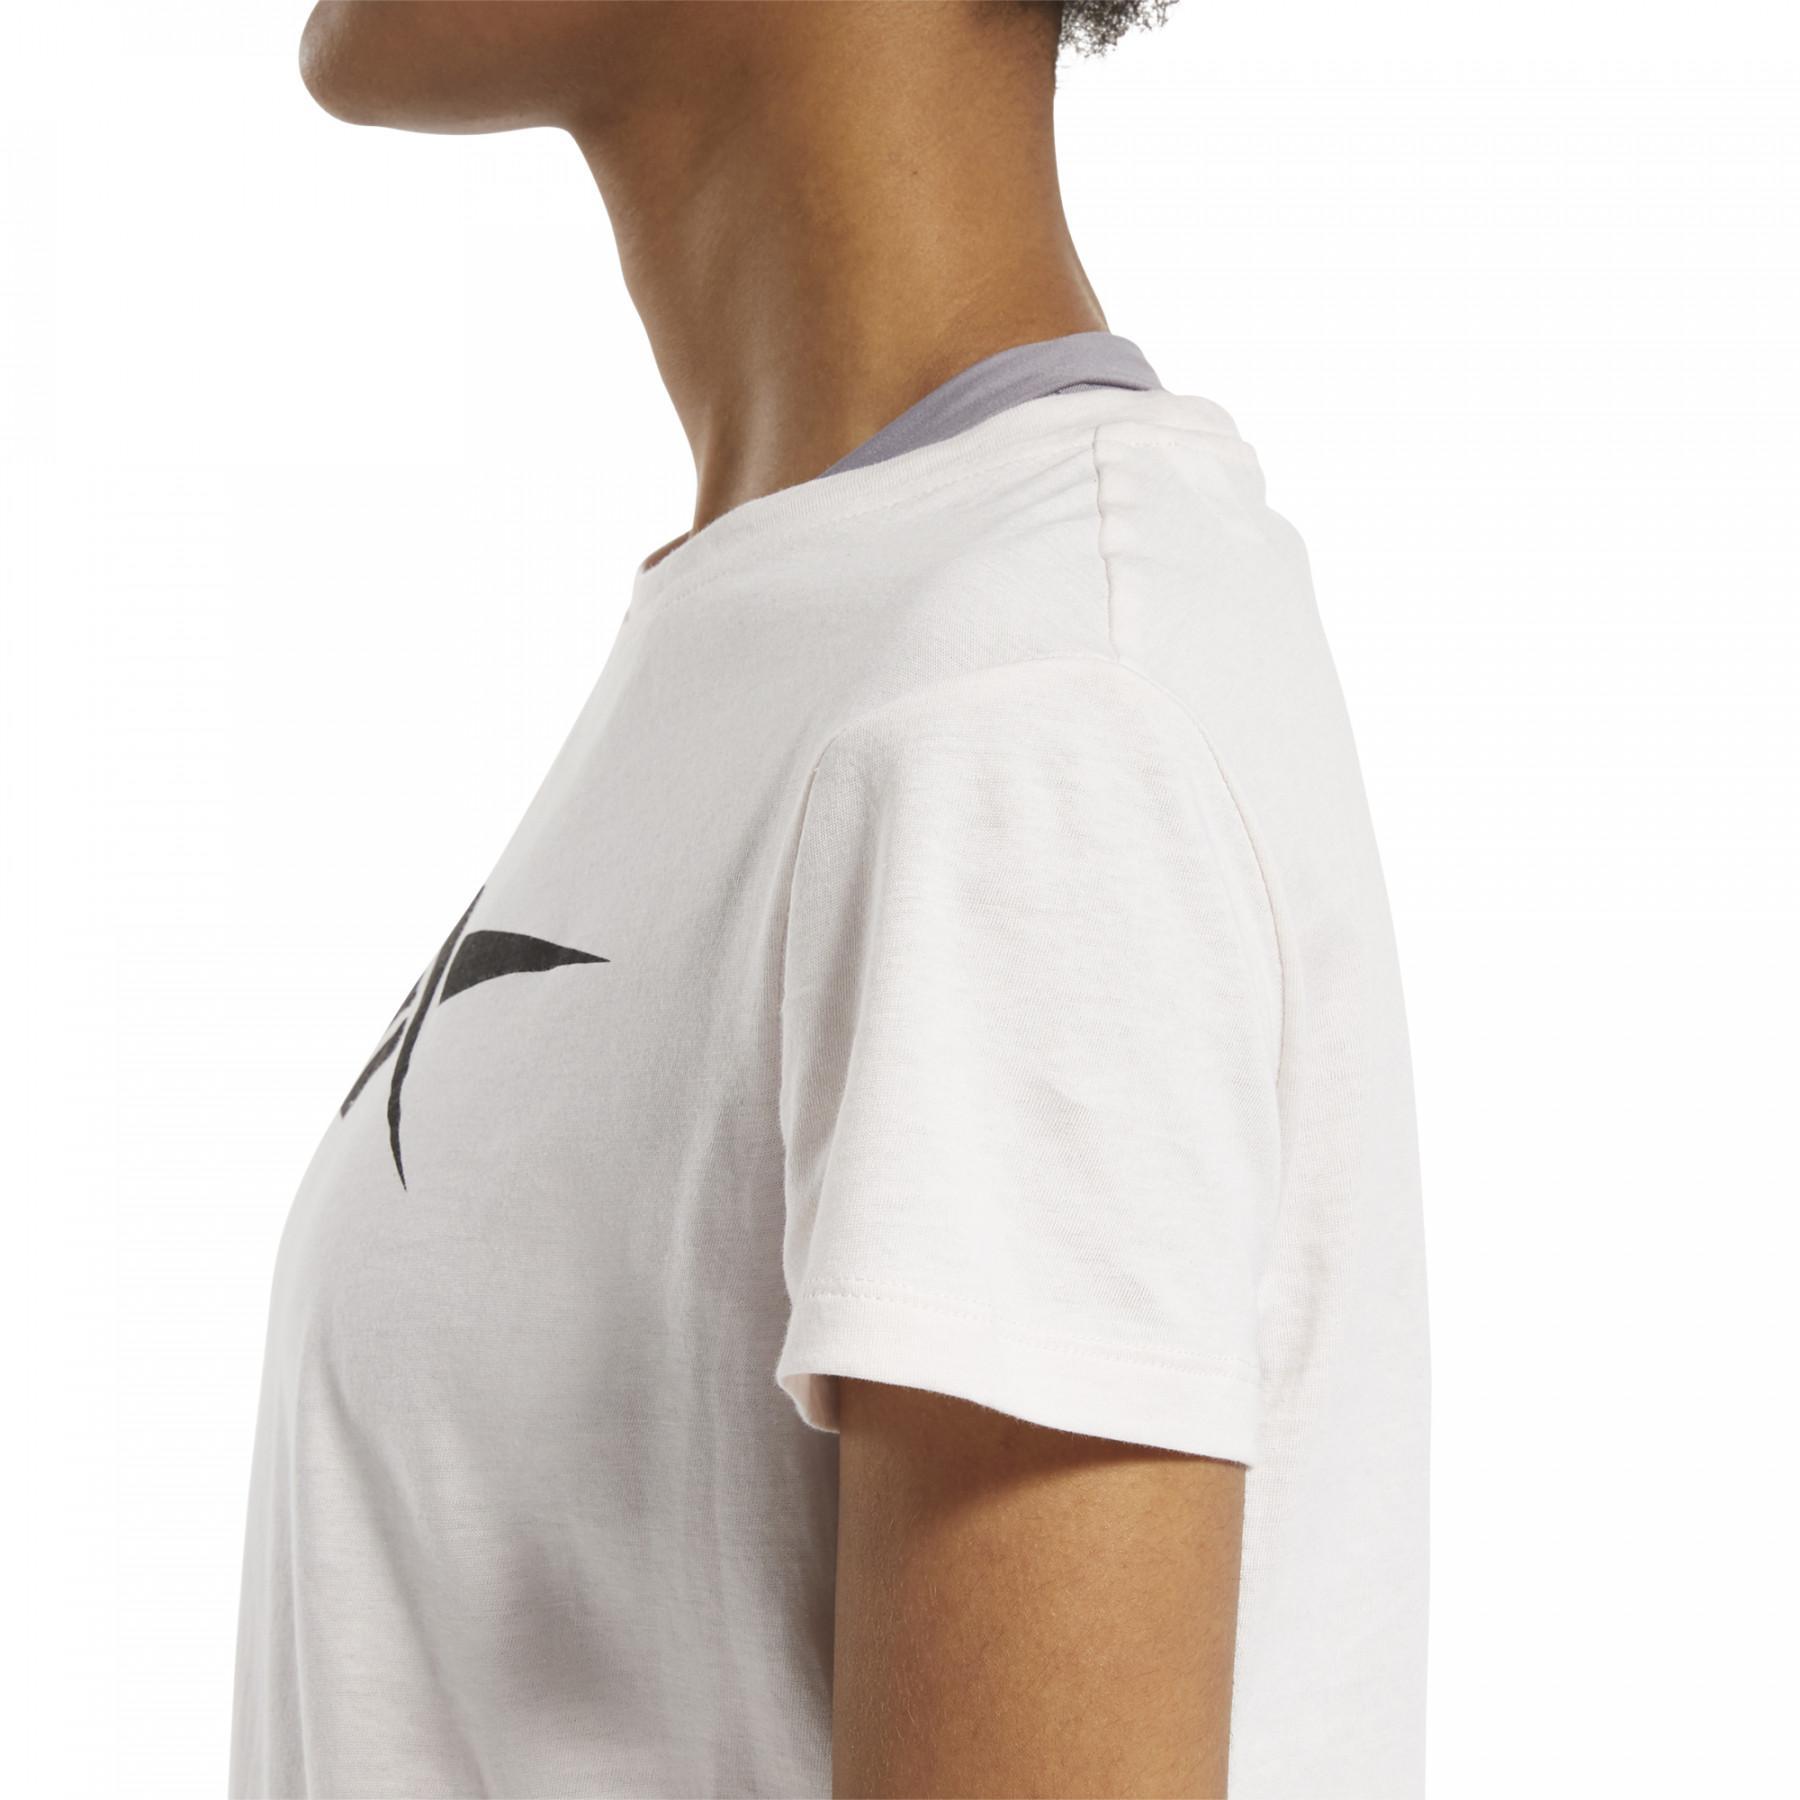 Camiseta mujer Reebok Training Essentials Vector Graphic